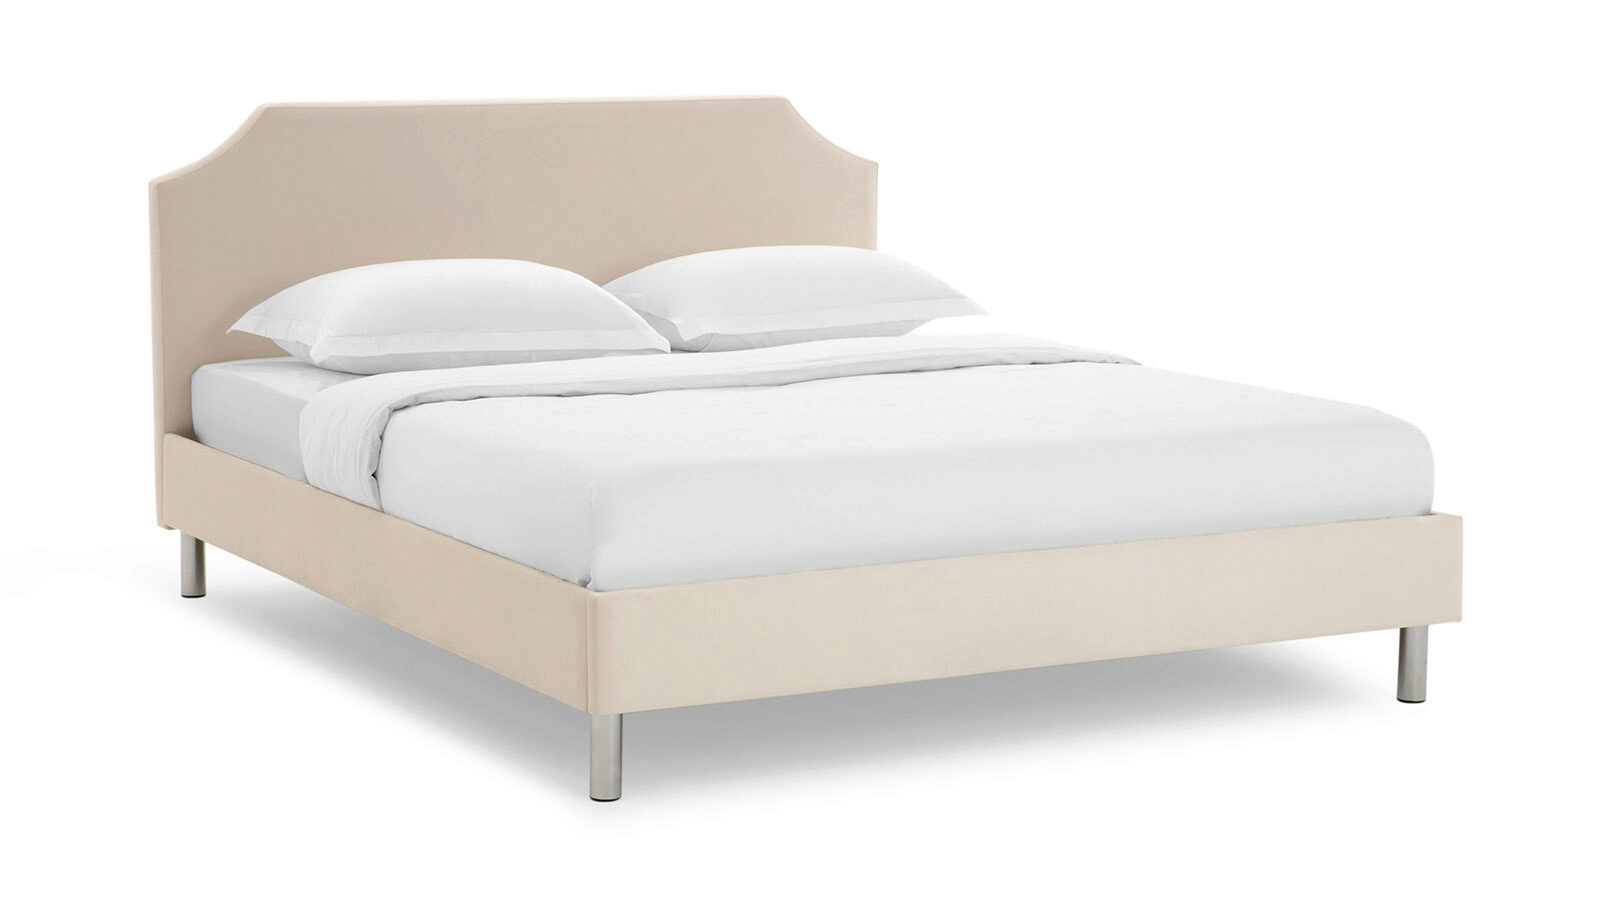 Кровать Runa перефразирована как Кровать Runa.